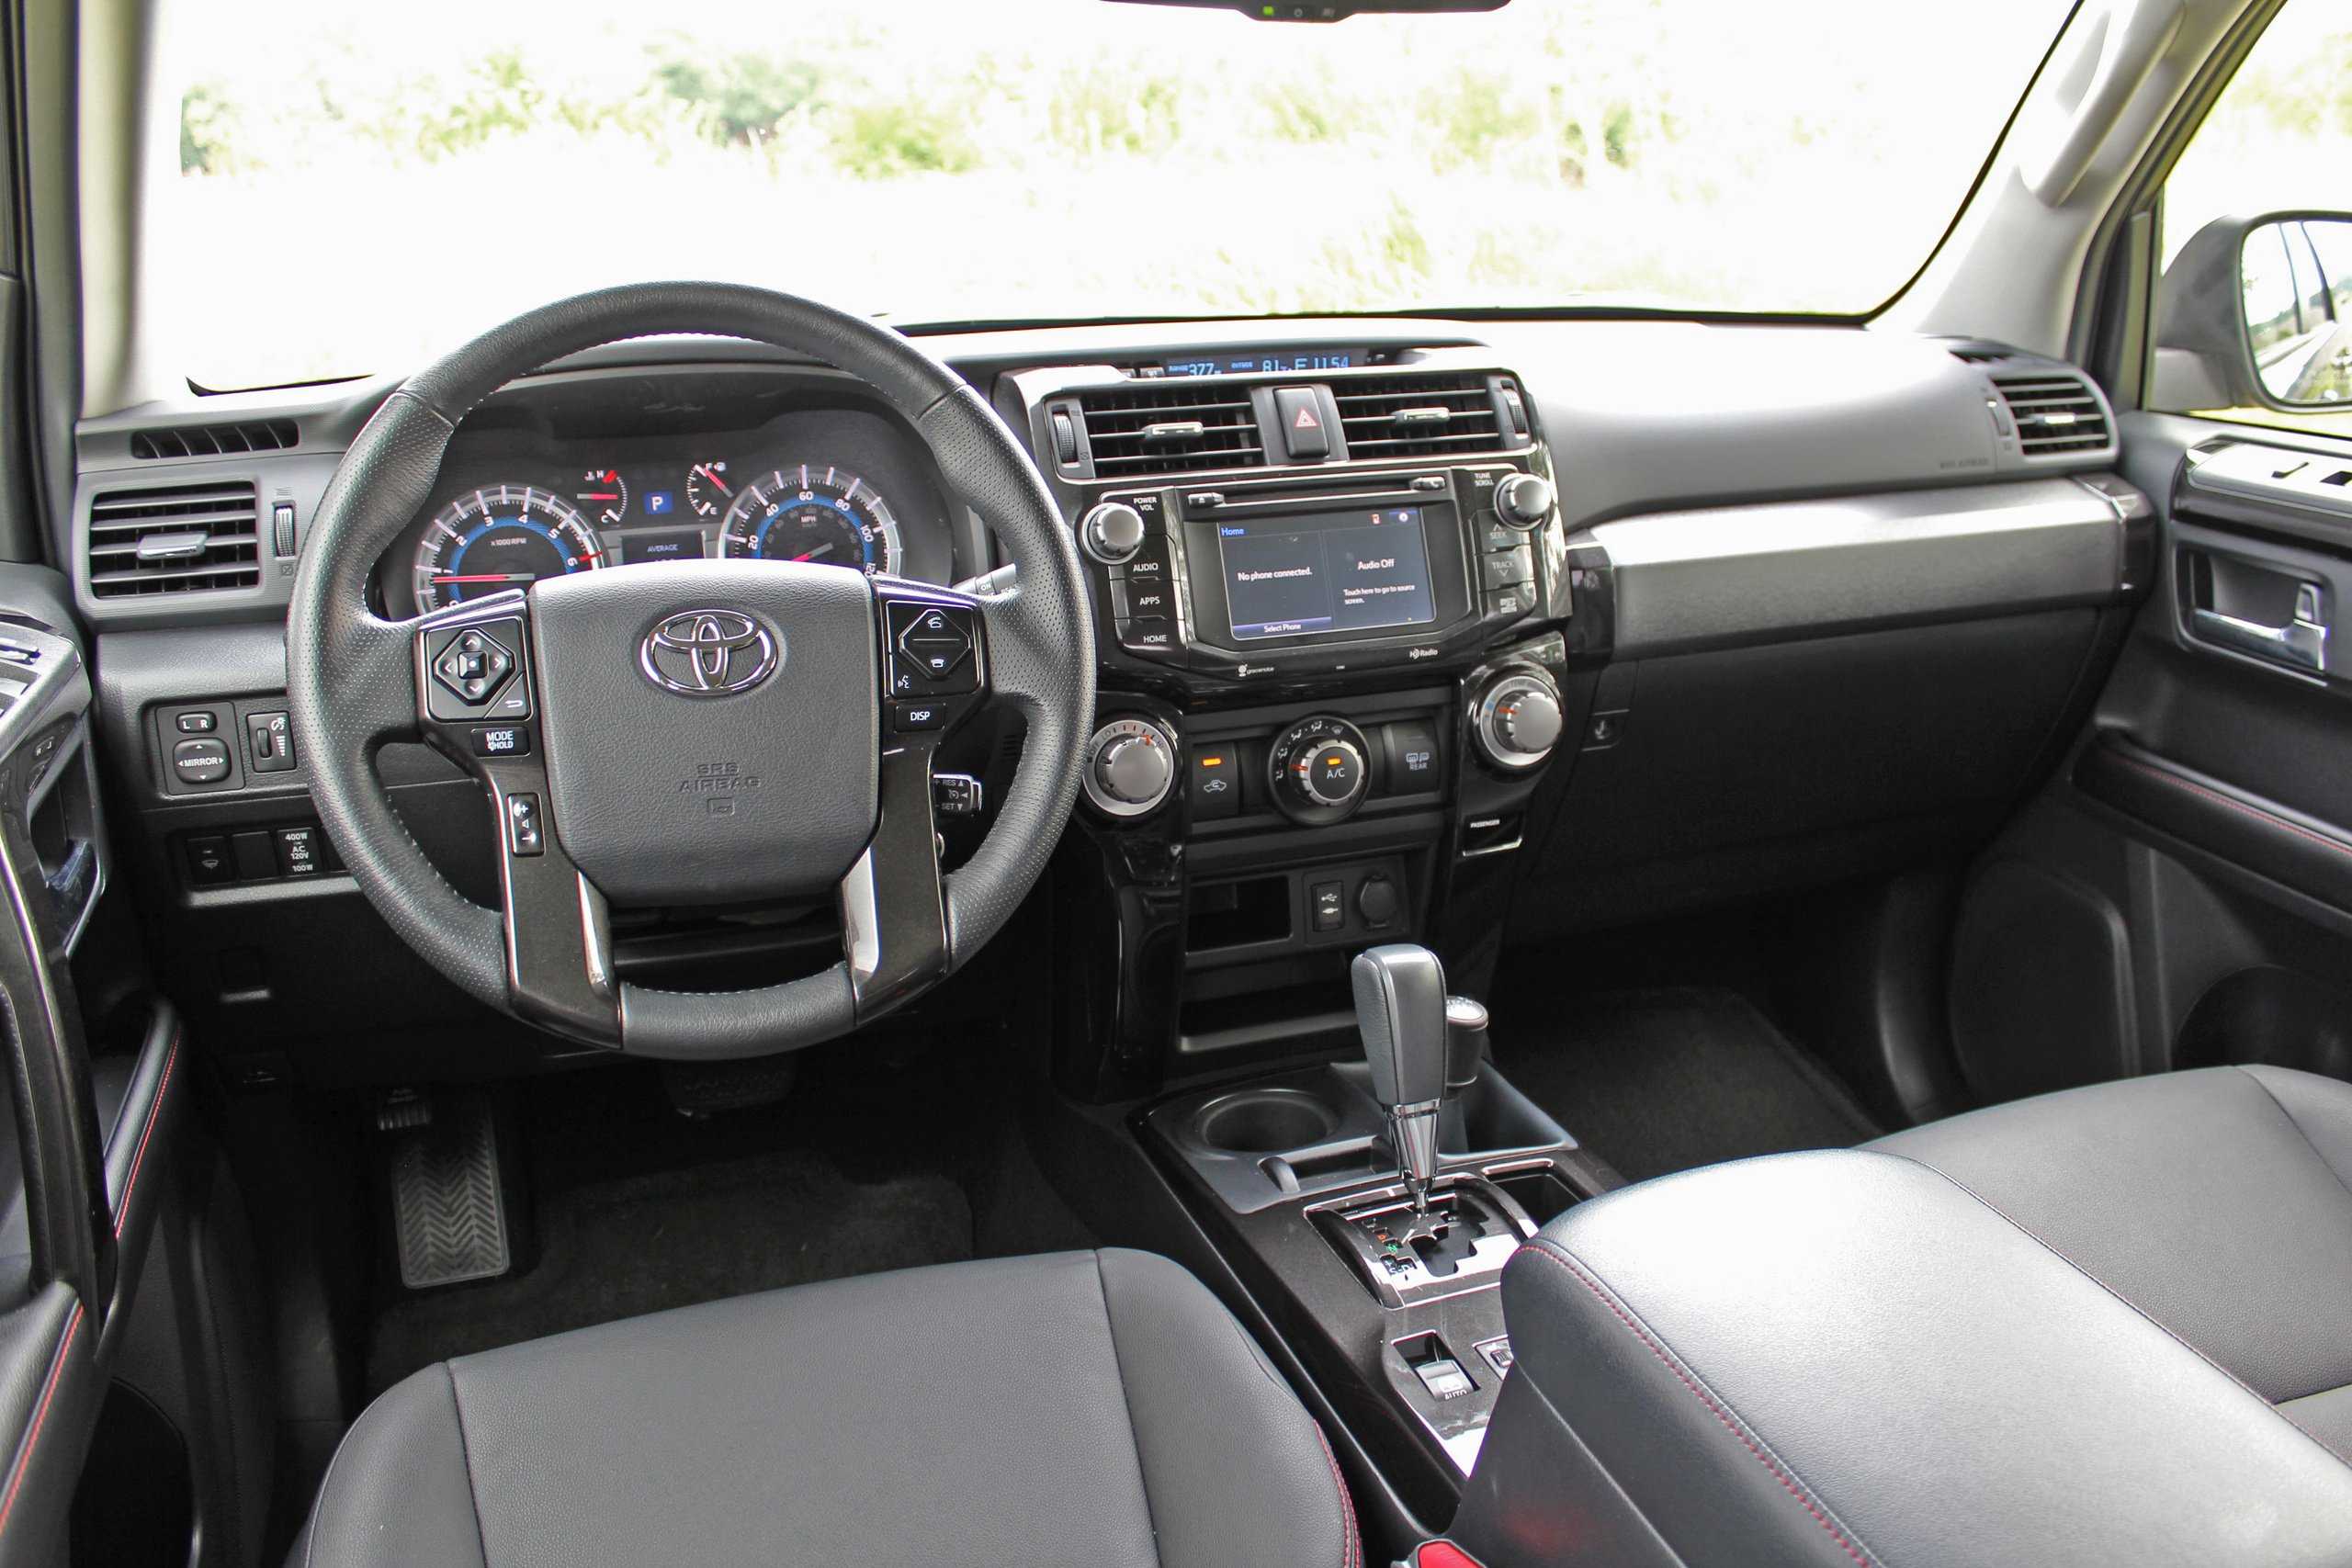 Toyota 4 runner 4.7i 4wd 5дв. внедорожник, 235 л.с, 5акпп, 2003 – 2005 г.в. - неисправности тормозной системы